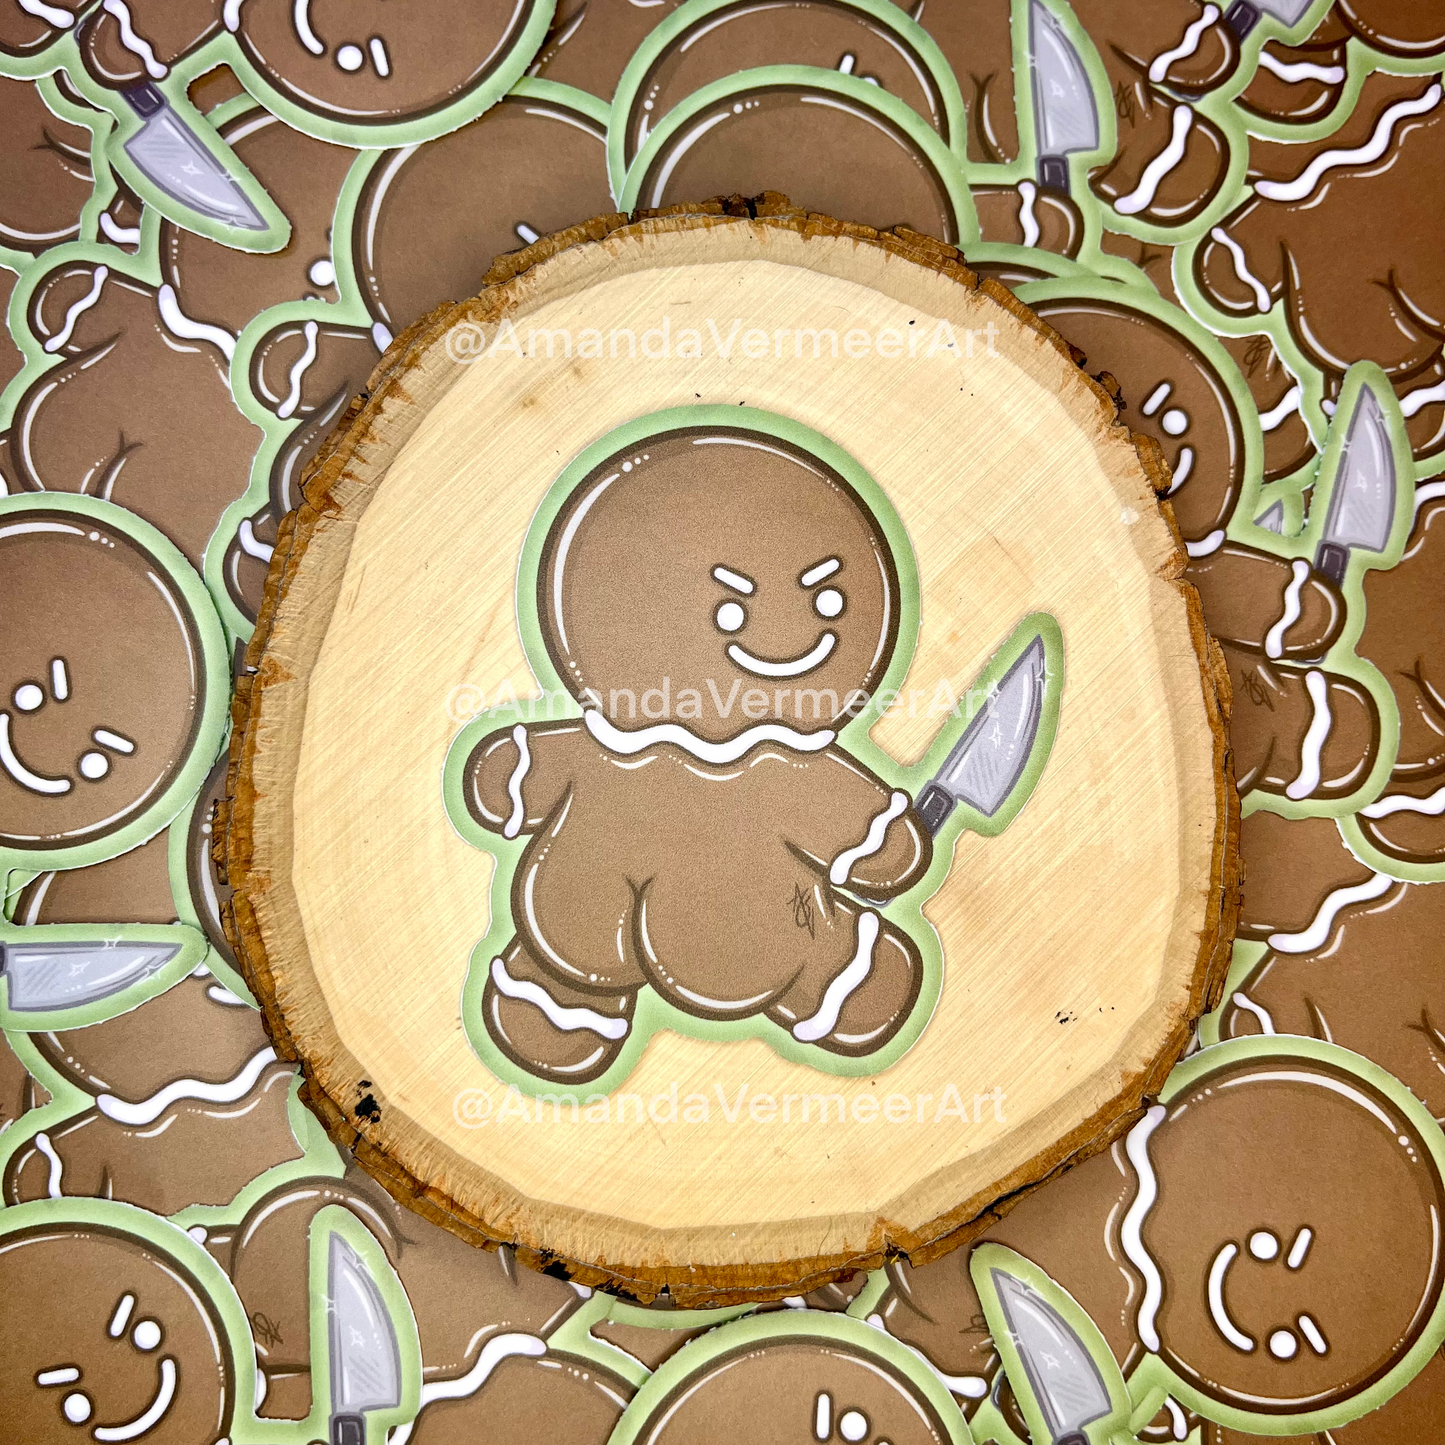 GingerButt Man Sticker, 3” x 3”